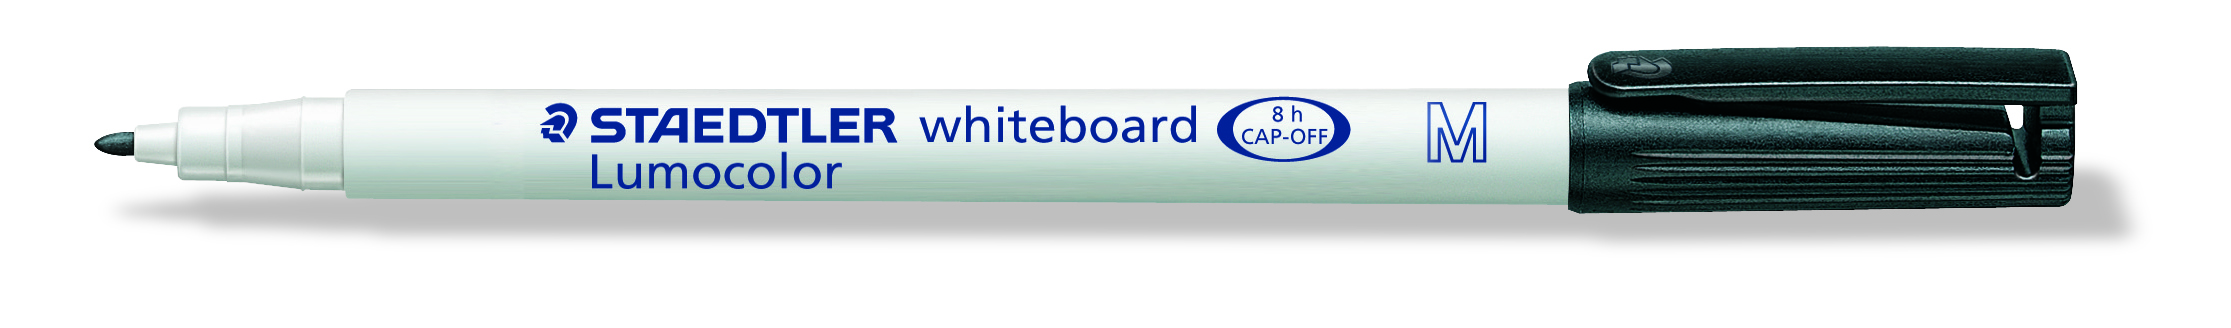 STAEDTLER Whiteboard merkepenn Lumocolor rund 1mm sort